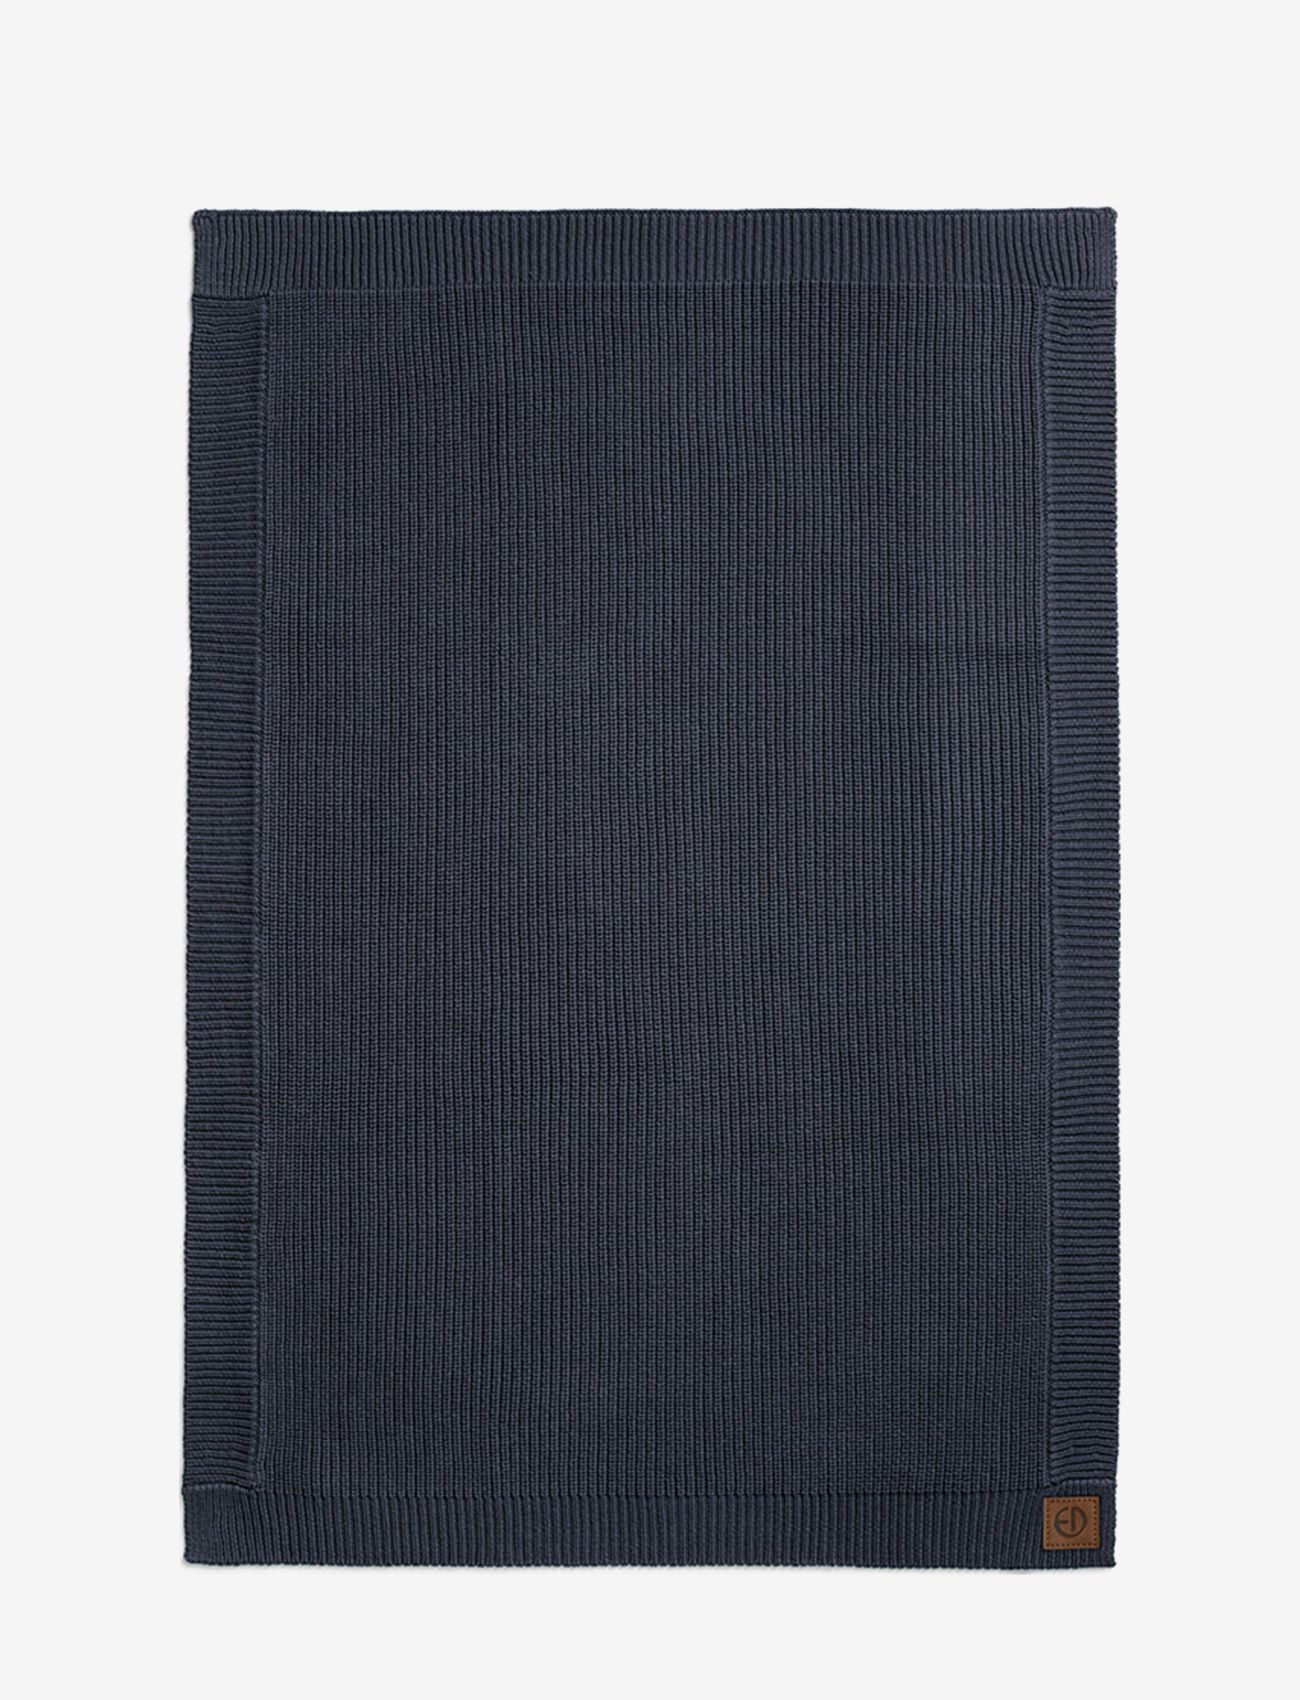 Elodie Details - Wool Knitted Blanket - Juniper Blue - blankets - dk blue - 1